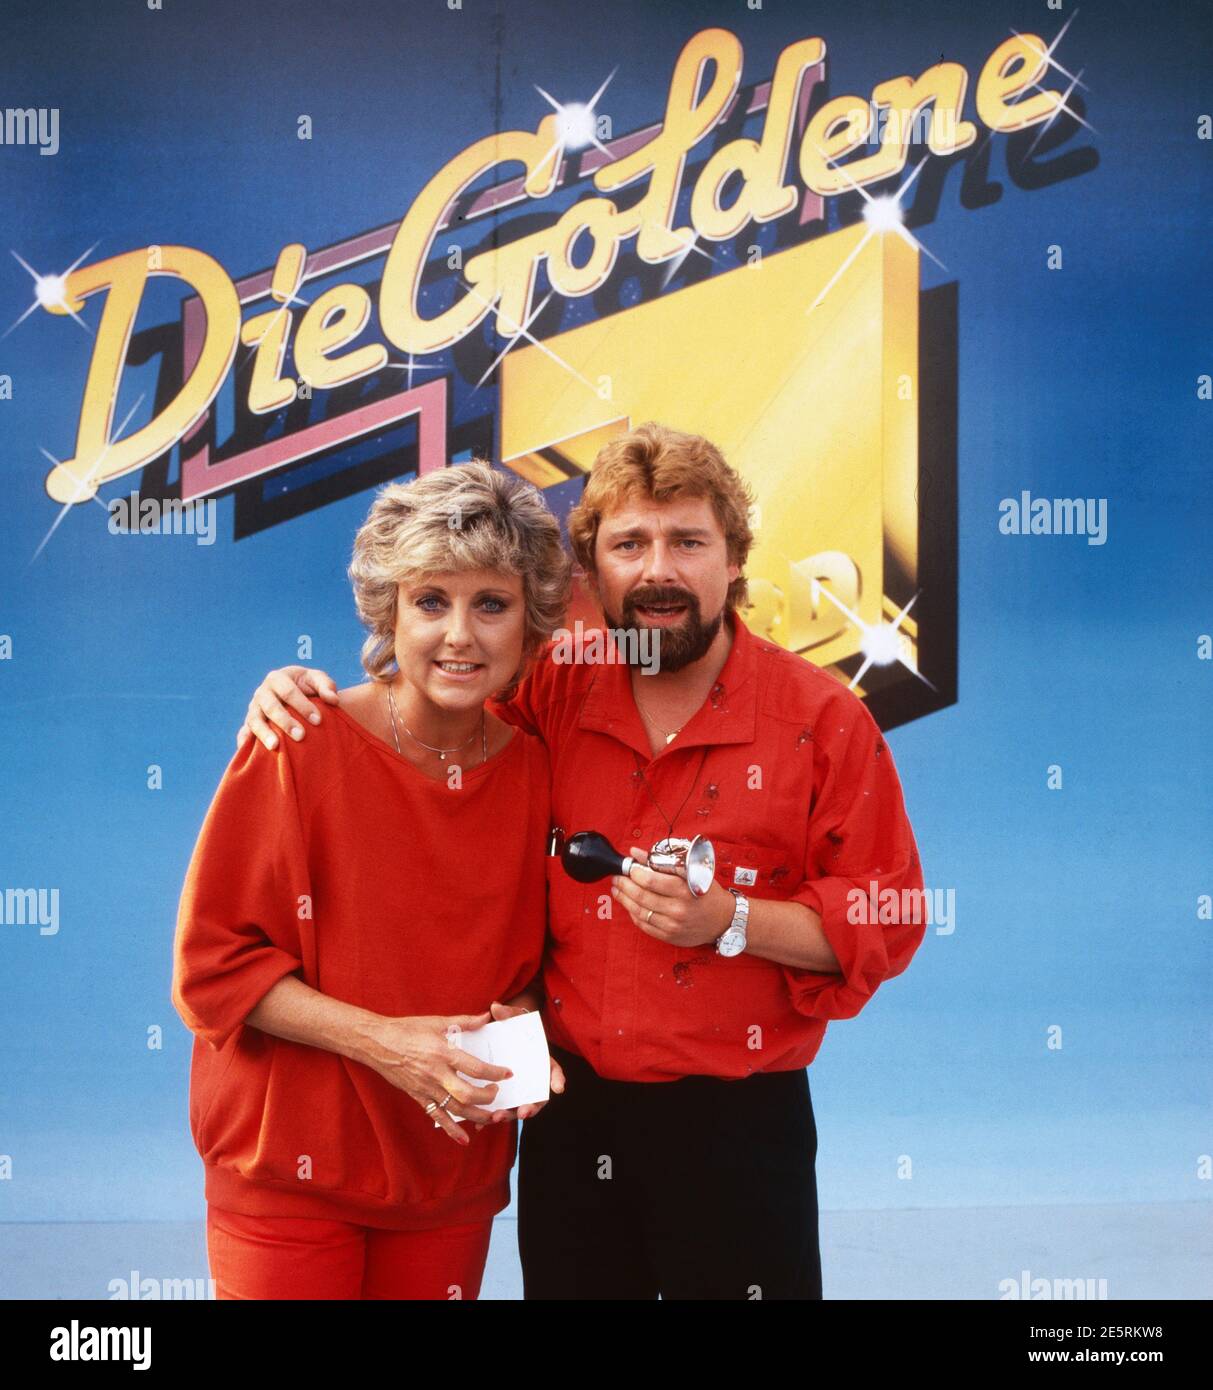 Die Goldene 1, Spielshow, Deutschland 1987, live von der IFA in Berlin, Moderatoren: Sigi Harreis, Jürgen von der Lippe Foto Stock